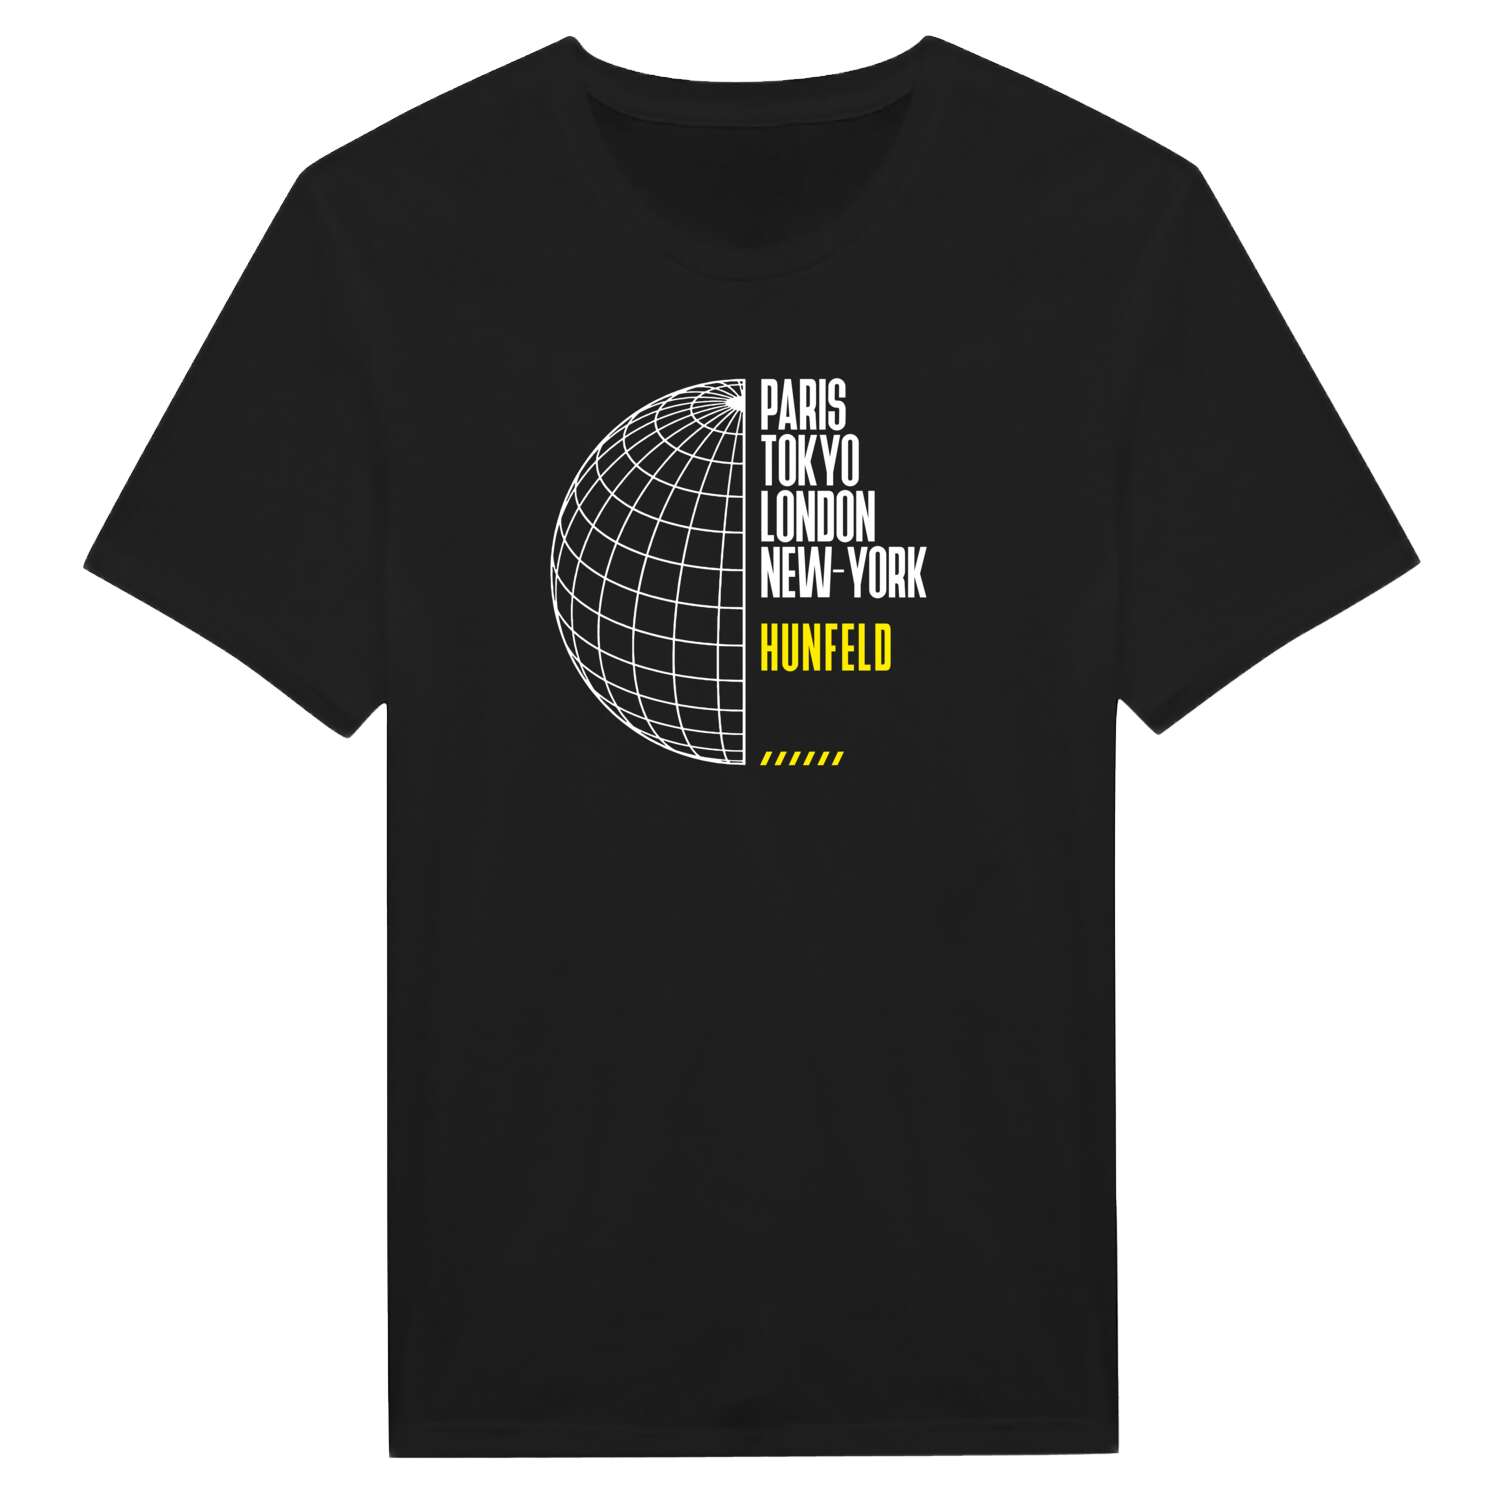 Hunfeld T-Shirt »Paris Tokyo London«